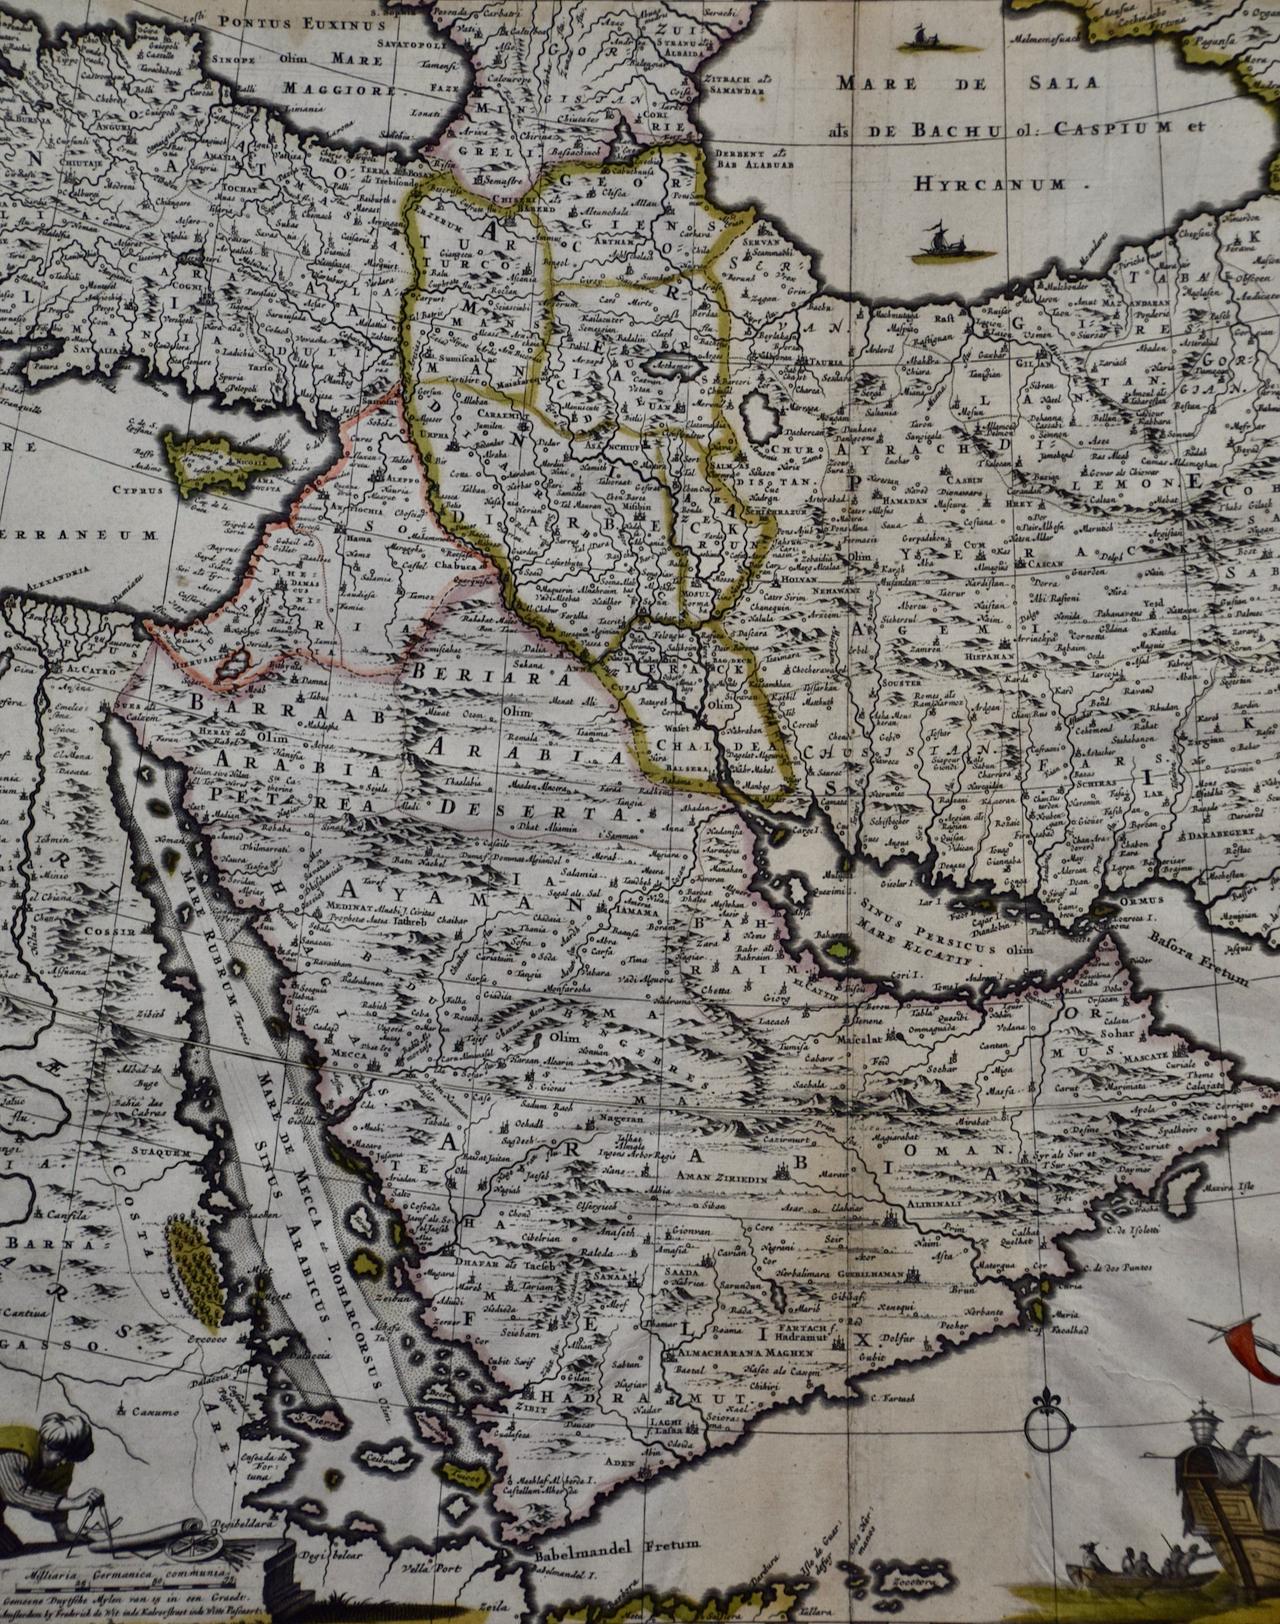 Diese farbenfrohe und detaillierte Kupferstichkarte aus dem 17. Jahrhundert von Frederick De Wit wurde zwischen 1666 und 1690 in Amsterdam veröffentlicht. Es zeigt das Kaspische Meer und Teile des Schwarzen, Roten, Mediterranen und Arabischen